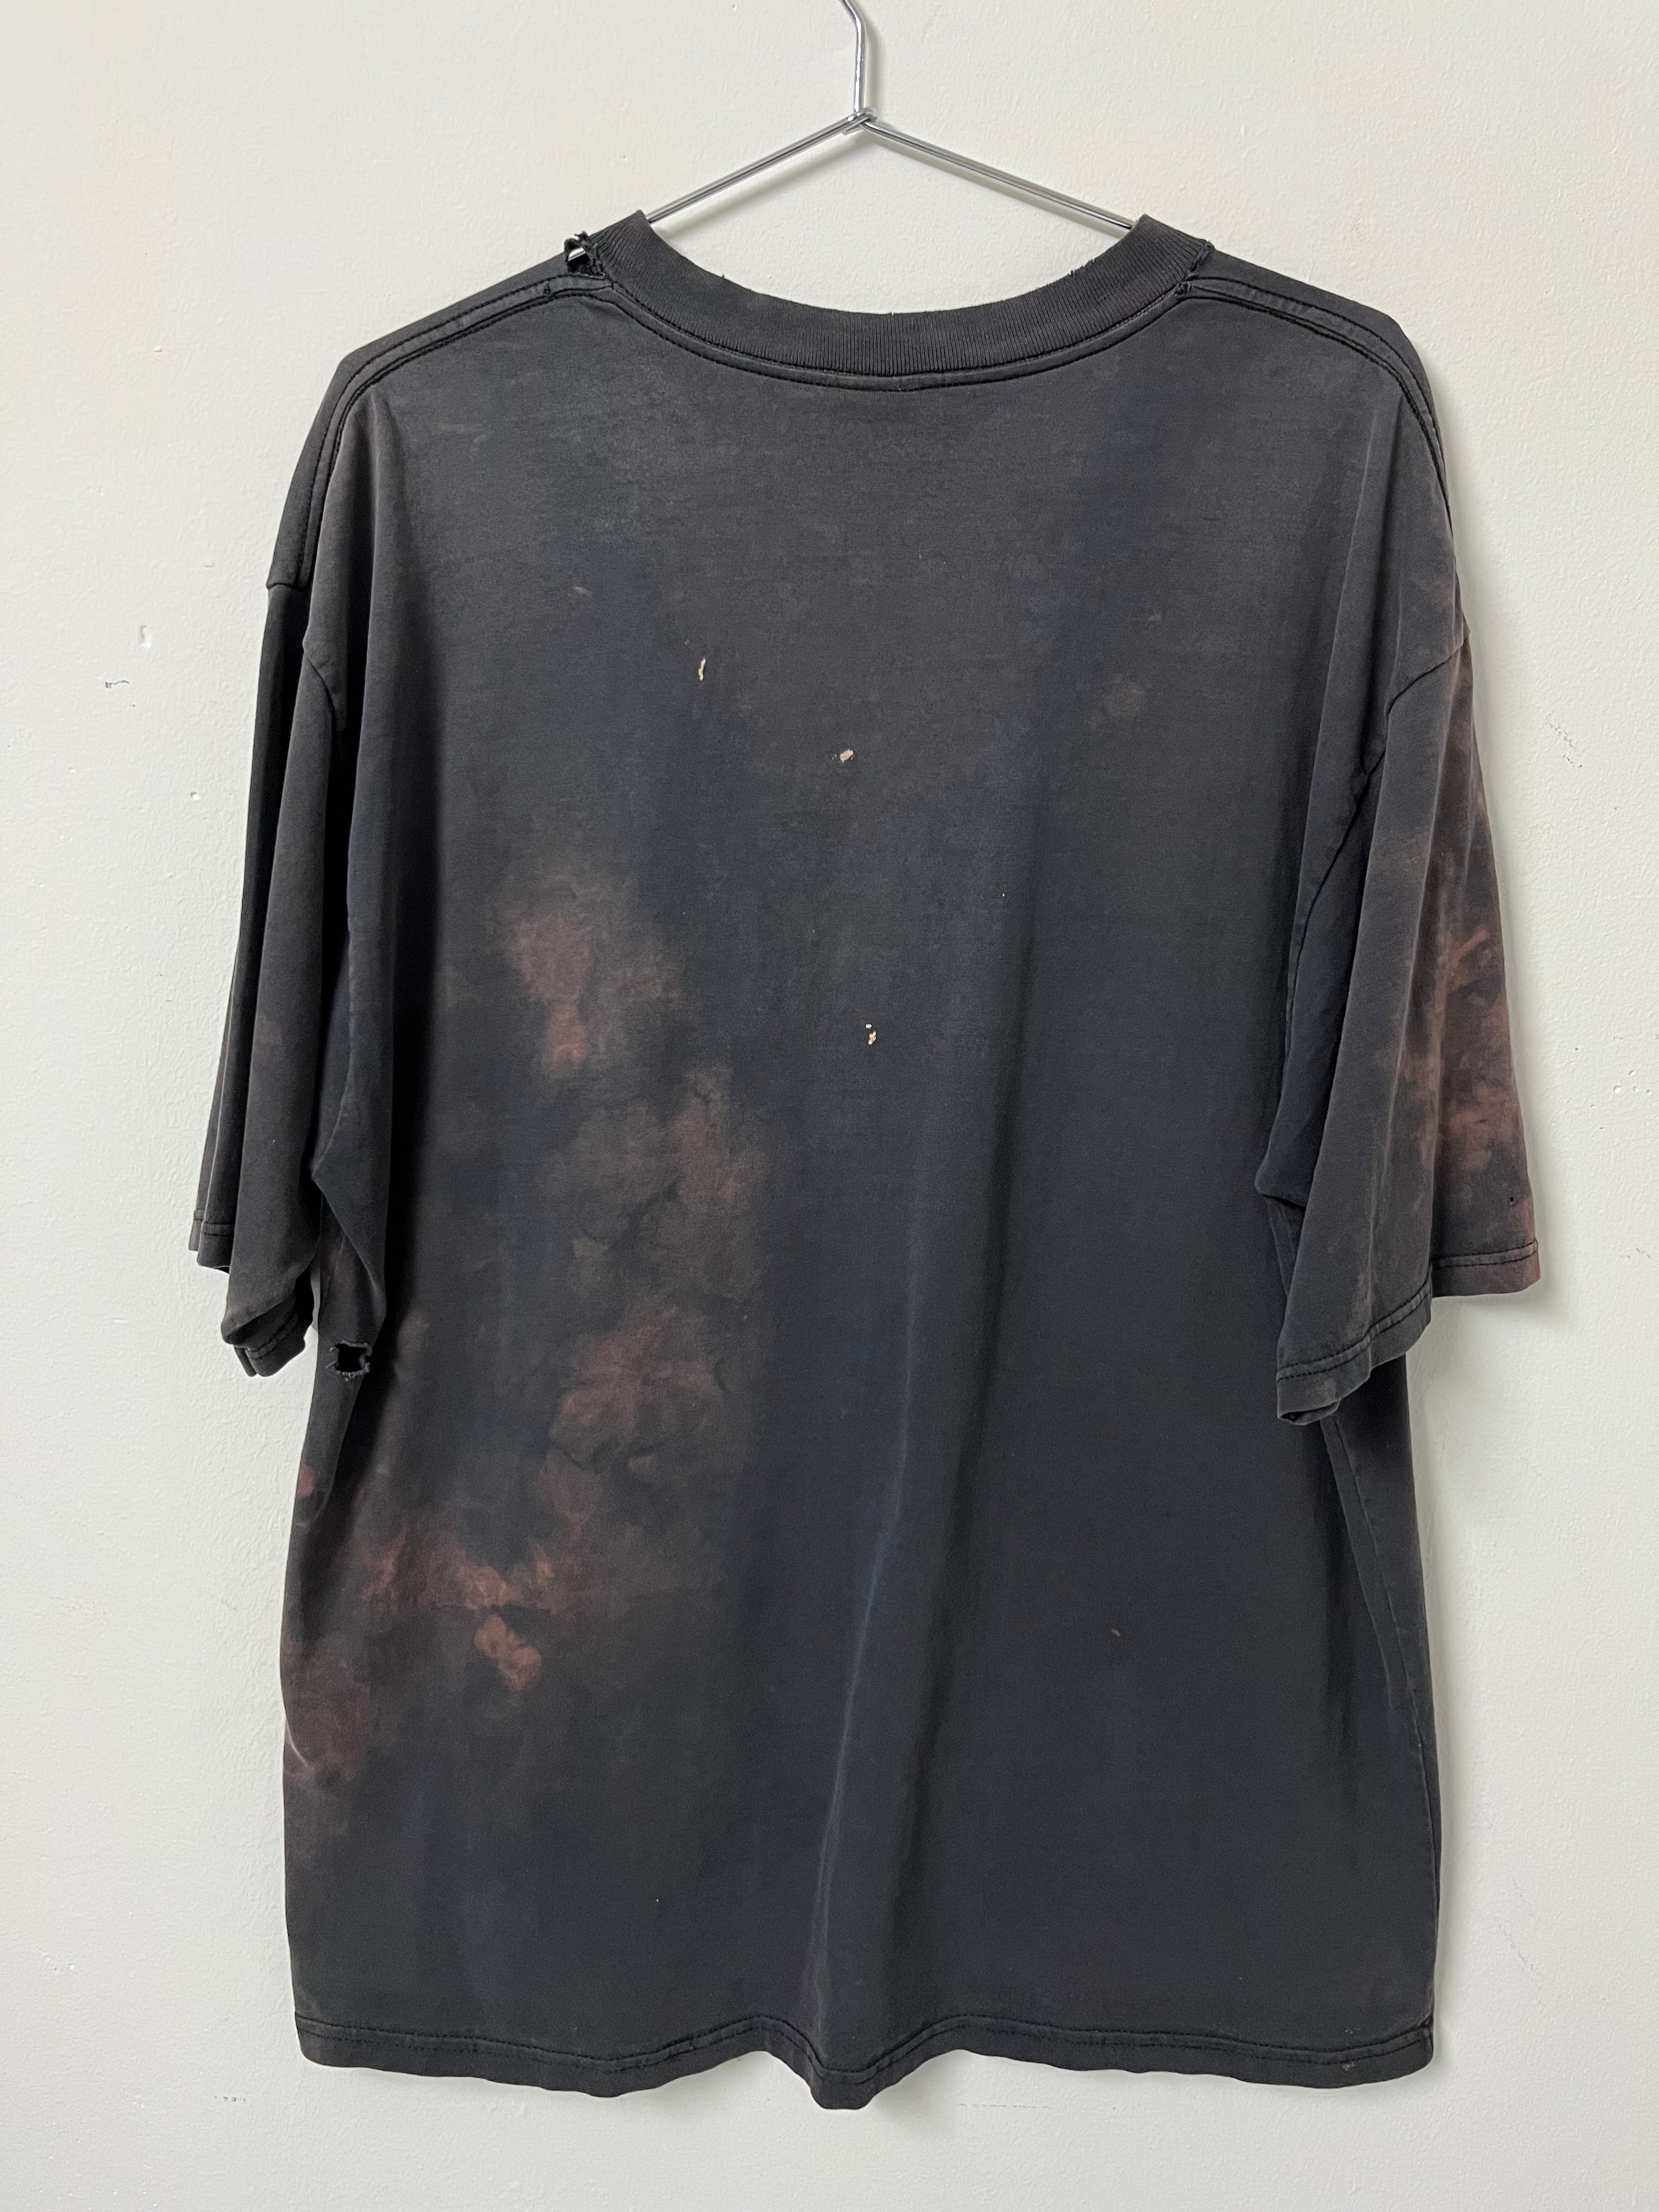 Early 1990s Carhartt Distressed Pocket T-Shirt - Faded Black - XL/XXL